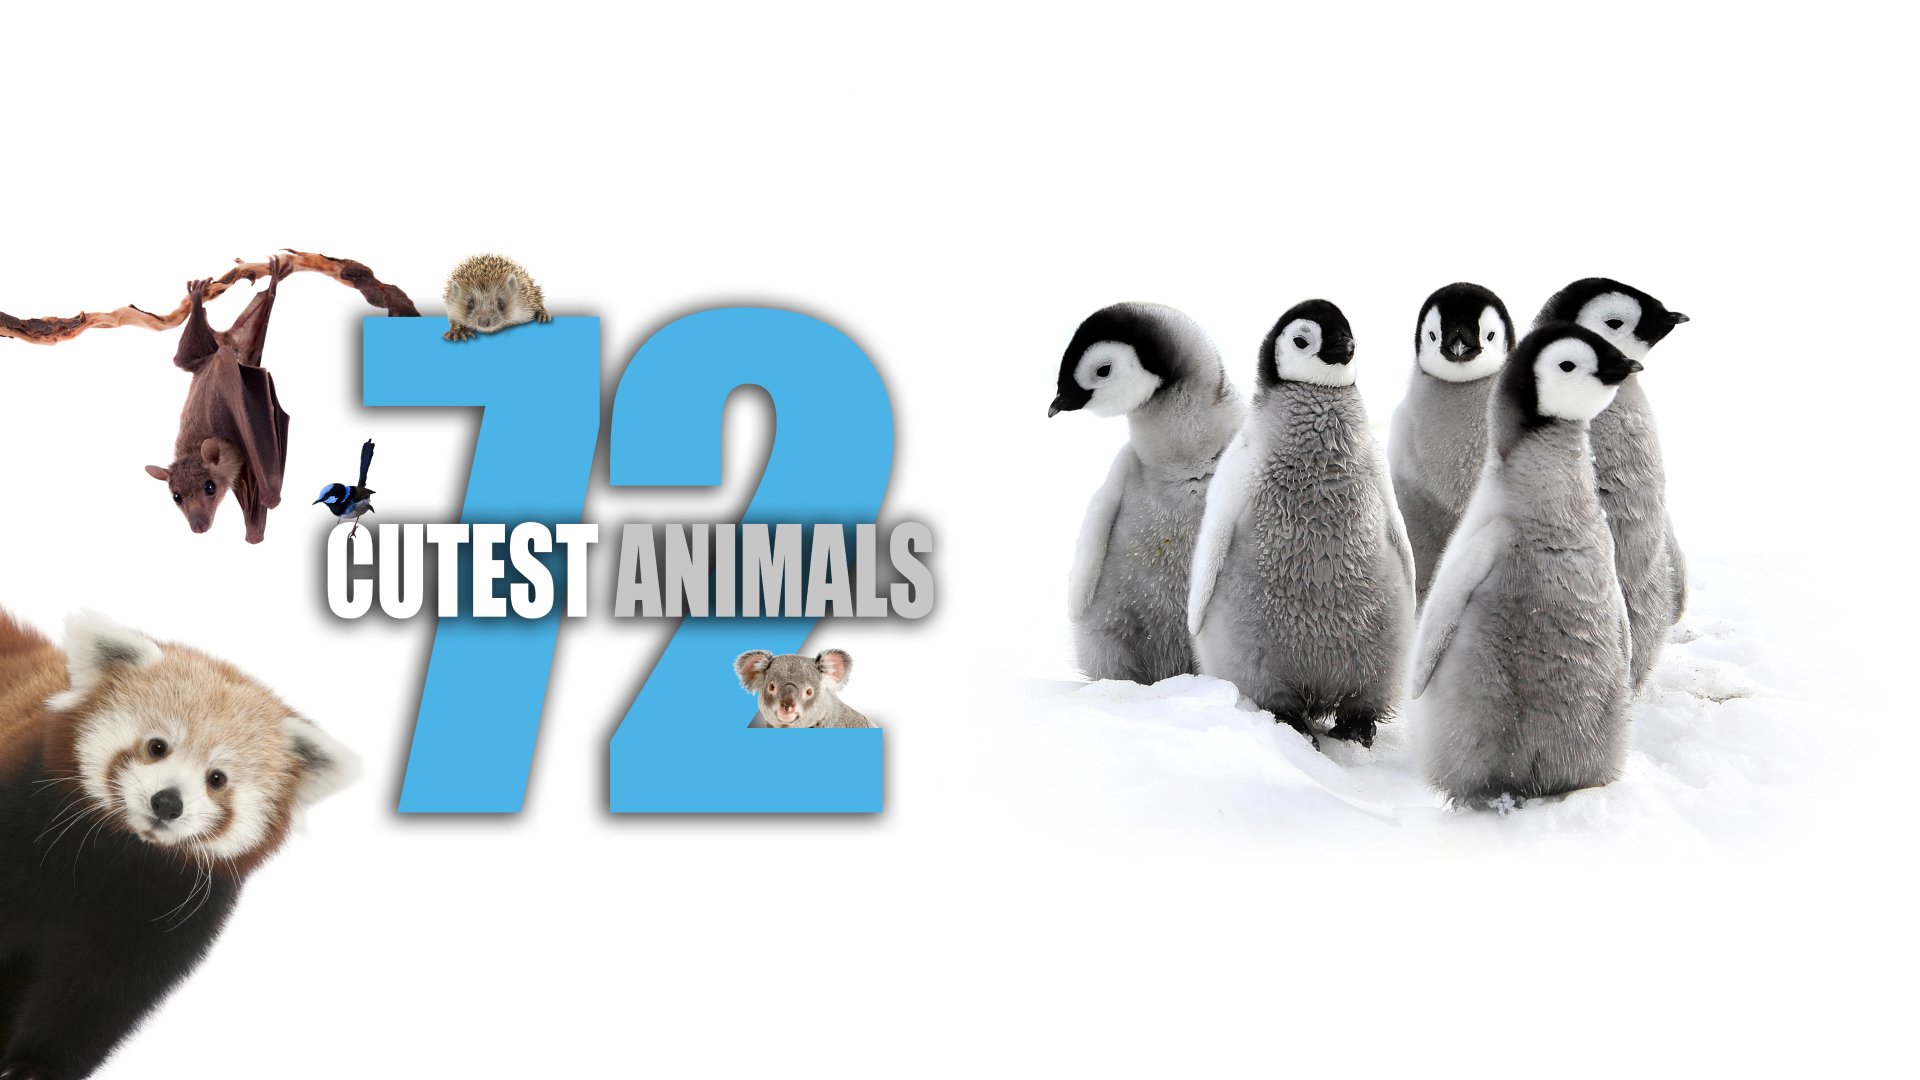 Watch 72 Cutest Animals Season 1 Episode 12 Online - Stream Full ...